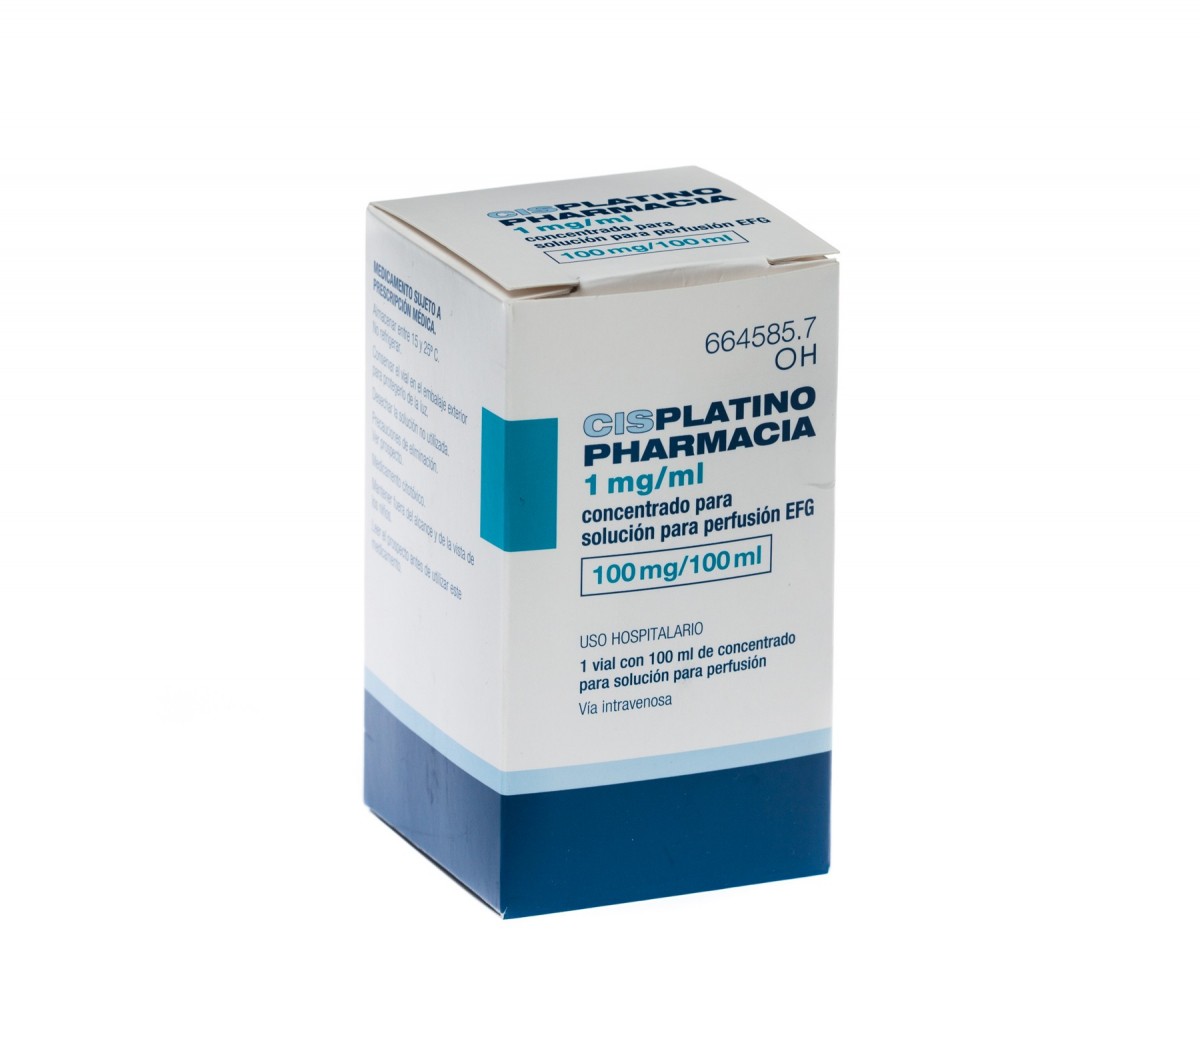 CISPLATINO PHARMACIA 1 mg/ml CONCENTRADO PARA SOLUCION PARA PERFUSION EFG , 1 vial de 50 ml fotografía del envase.